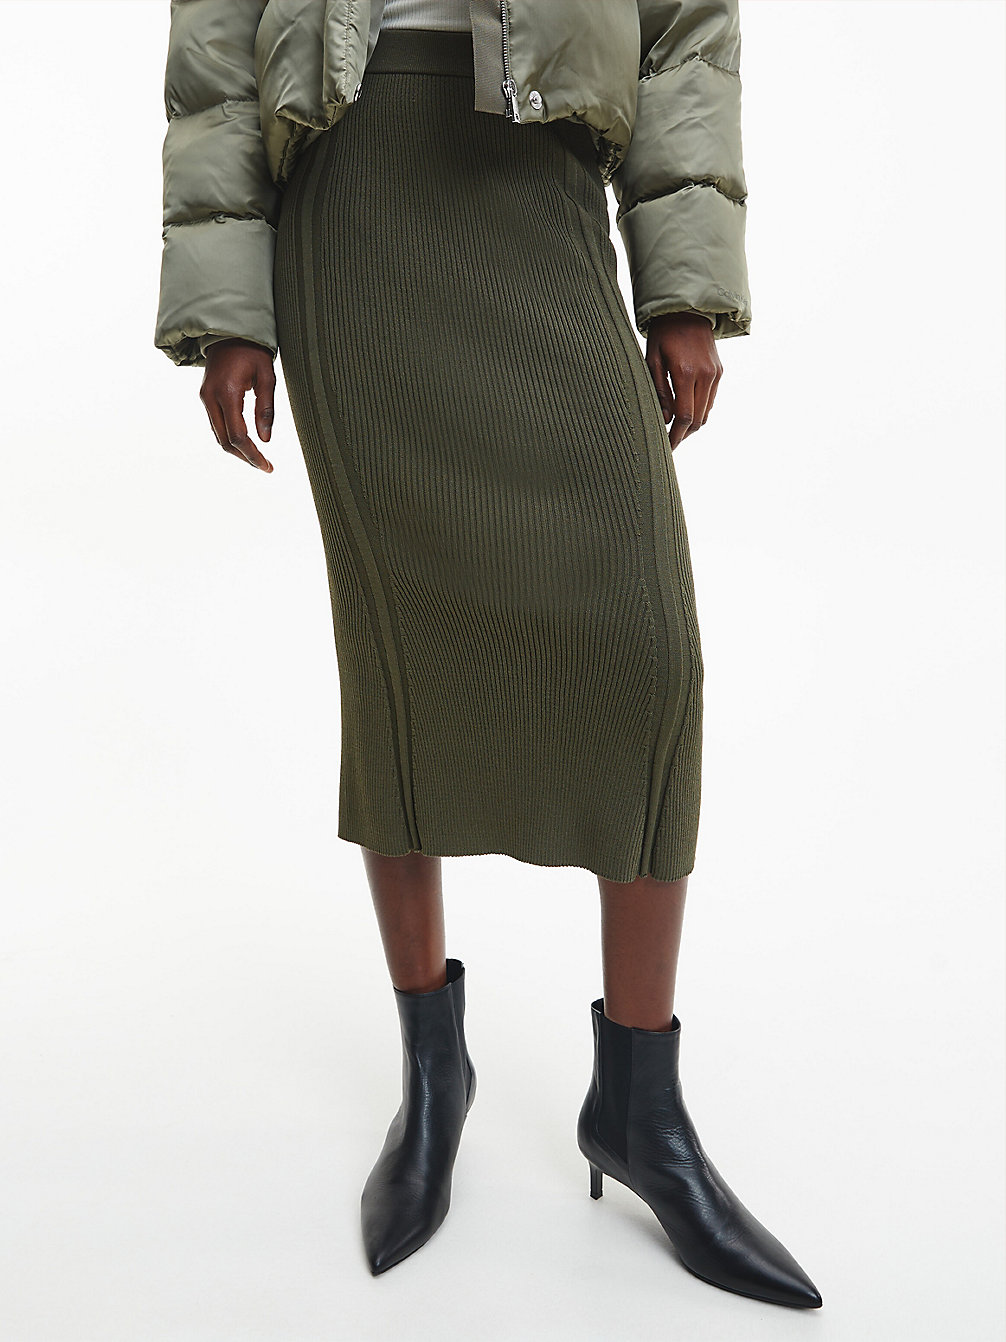 WILLOW GREEN > Spódnica Midi Z Tkaniny Ściągaczowej, Model Flare > undefined Kobiety - Calvin Klein